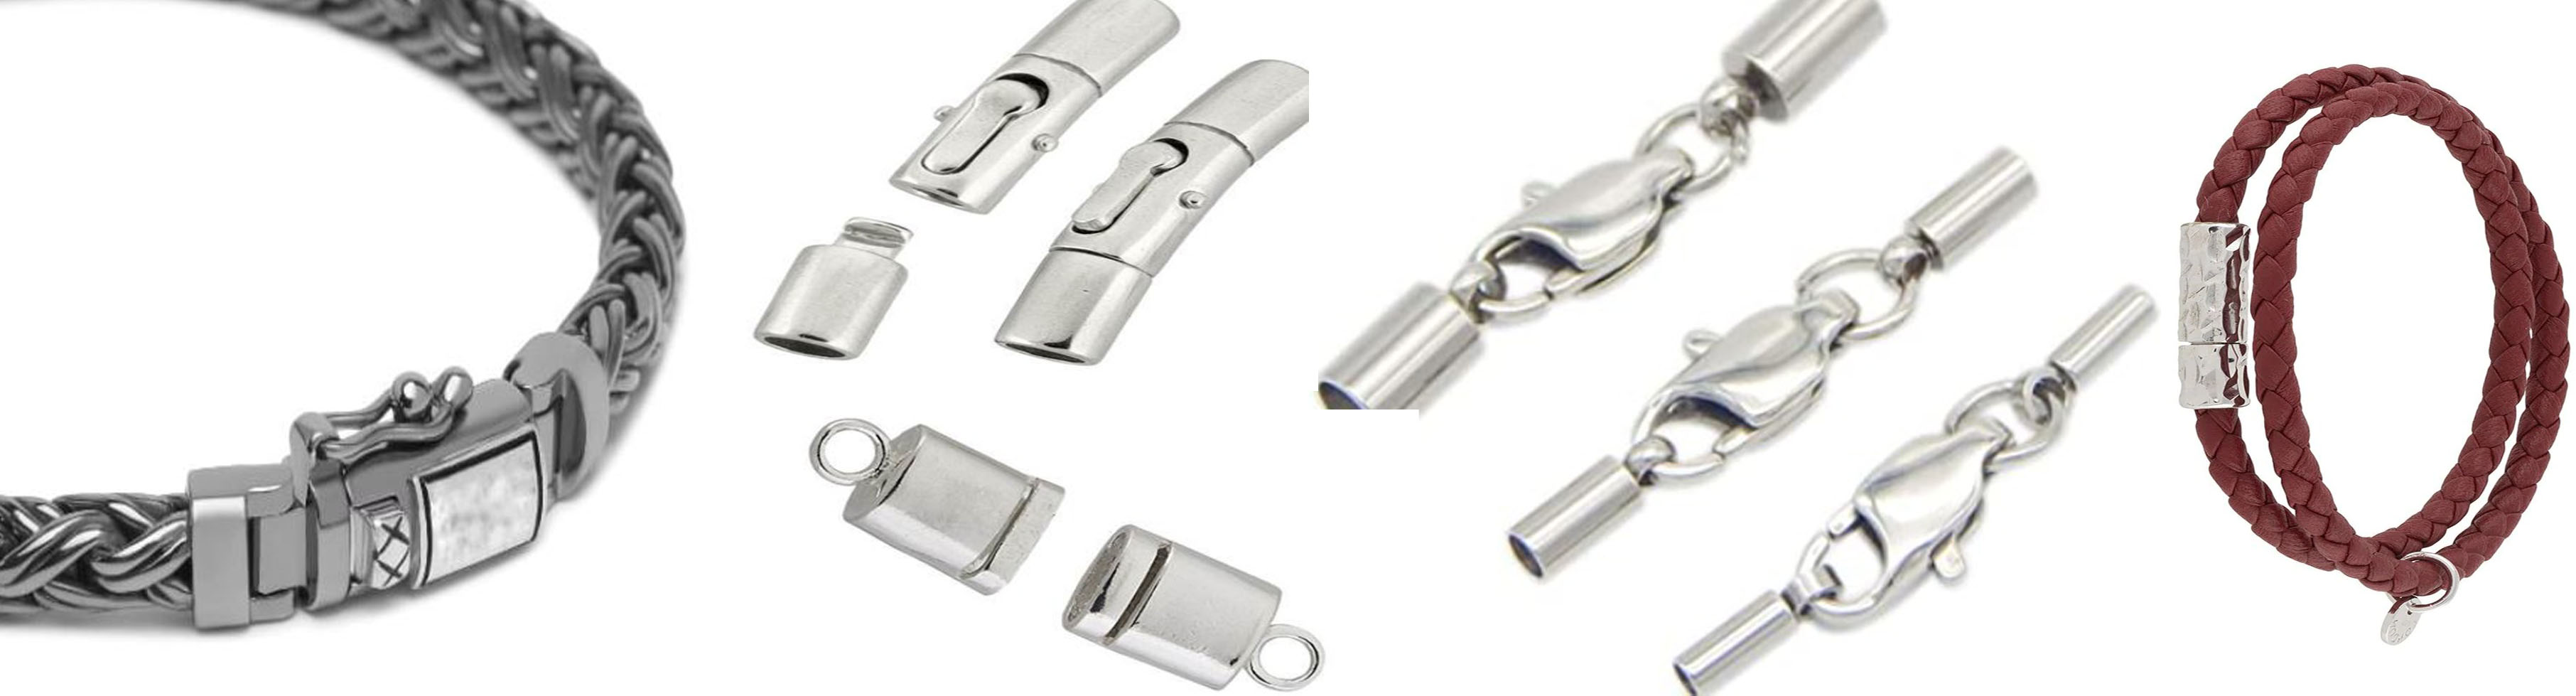 Buy Cierres Para Joyeria Cierres Magnéticos Sterling Silver Clasps  at wholesale prices